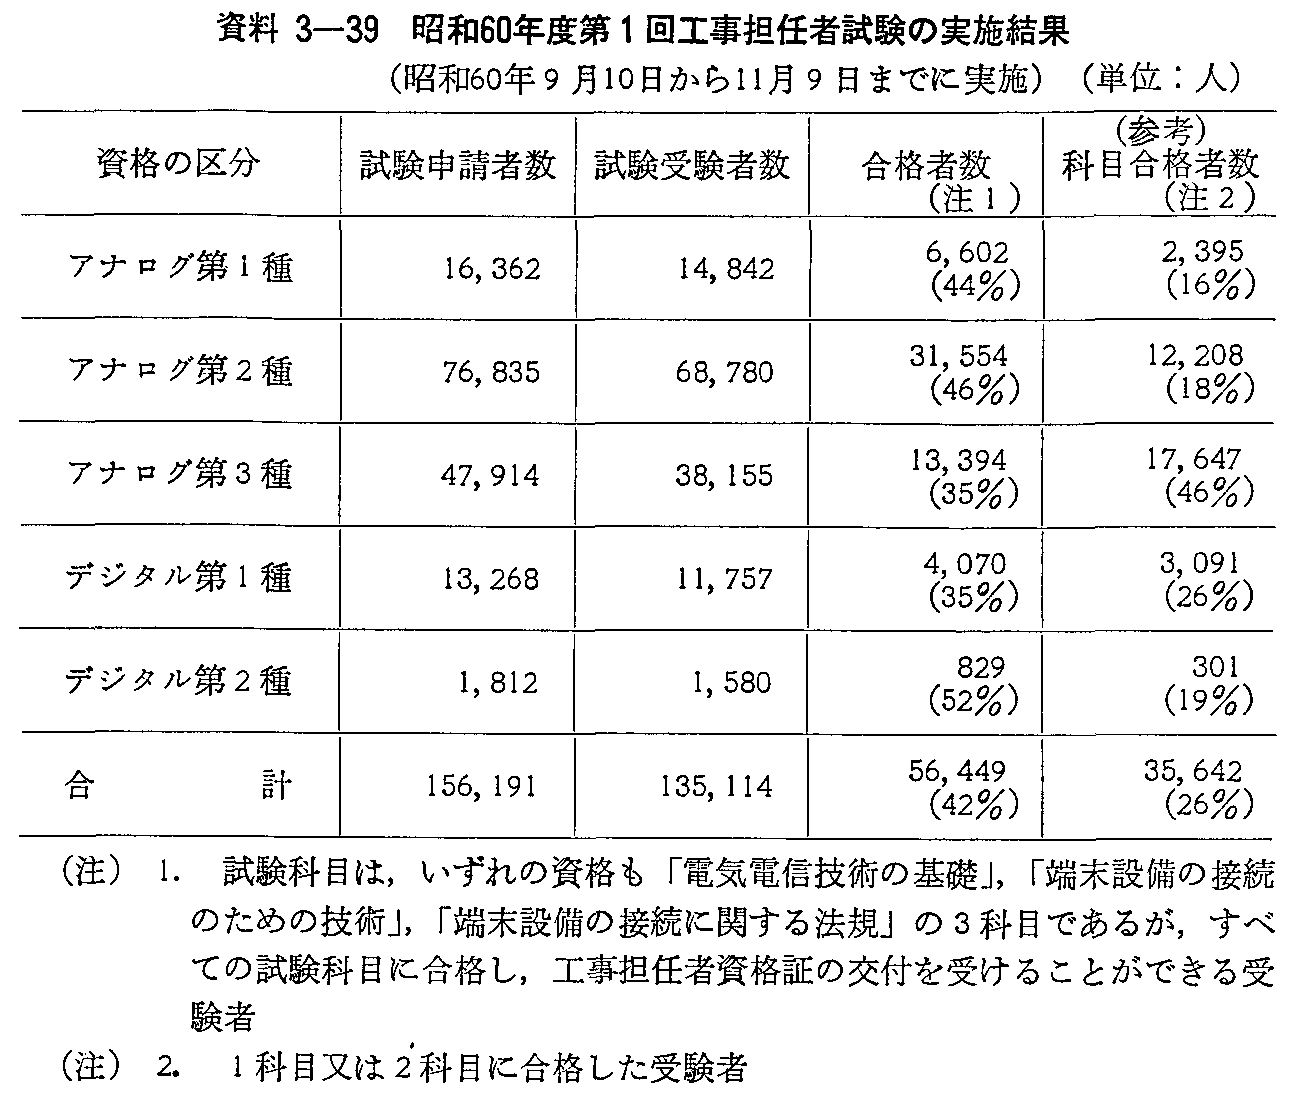 資料3-39 昭和60年度第1回工事担任者試験の実施結果(昭和60年9月10日から11月9日までに実施)